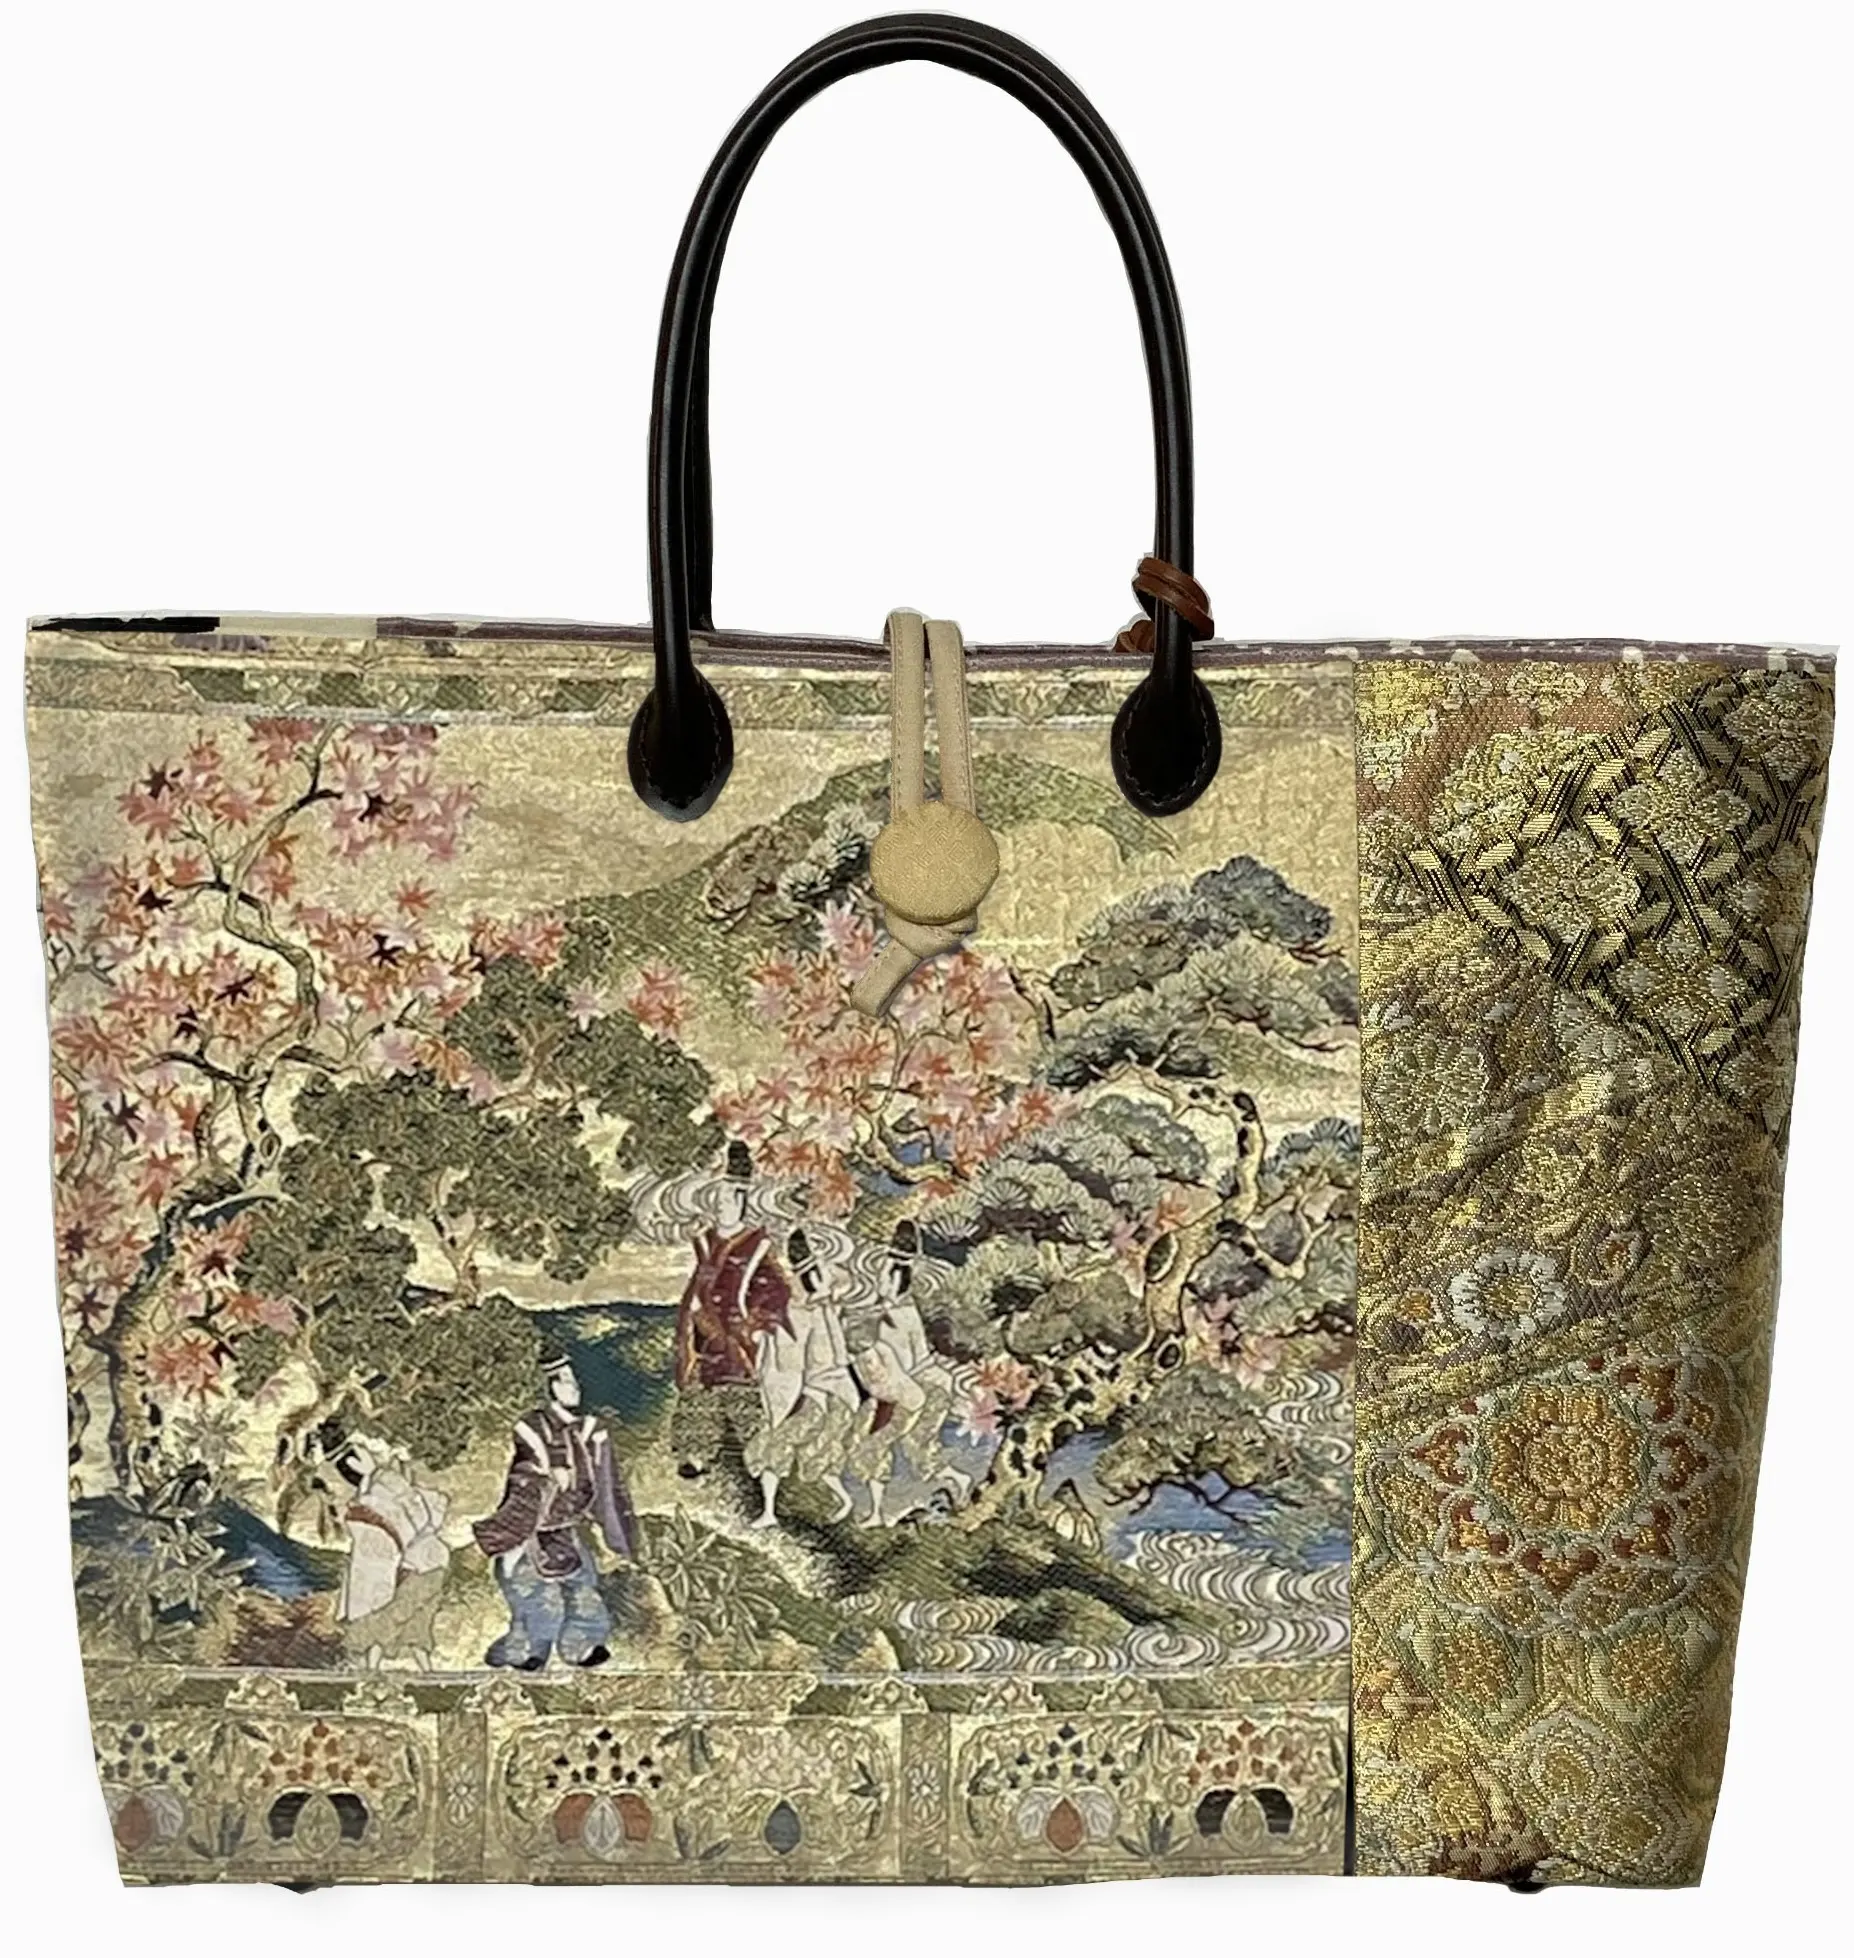 Original lightweight kimono fabric luxury ladies hand bags for women top quality handbags fashion handbag